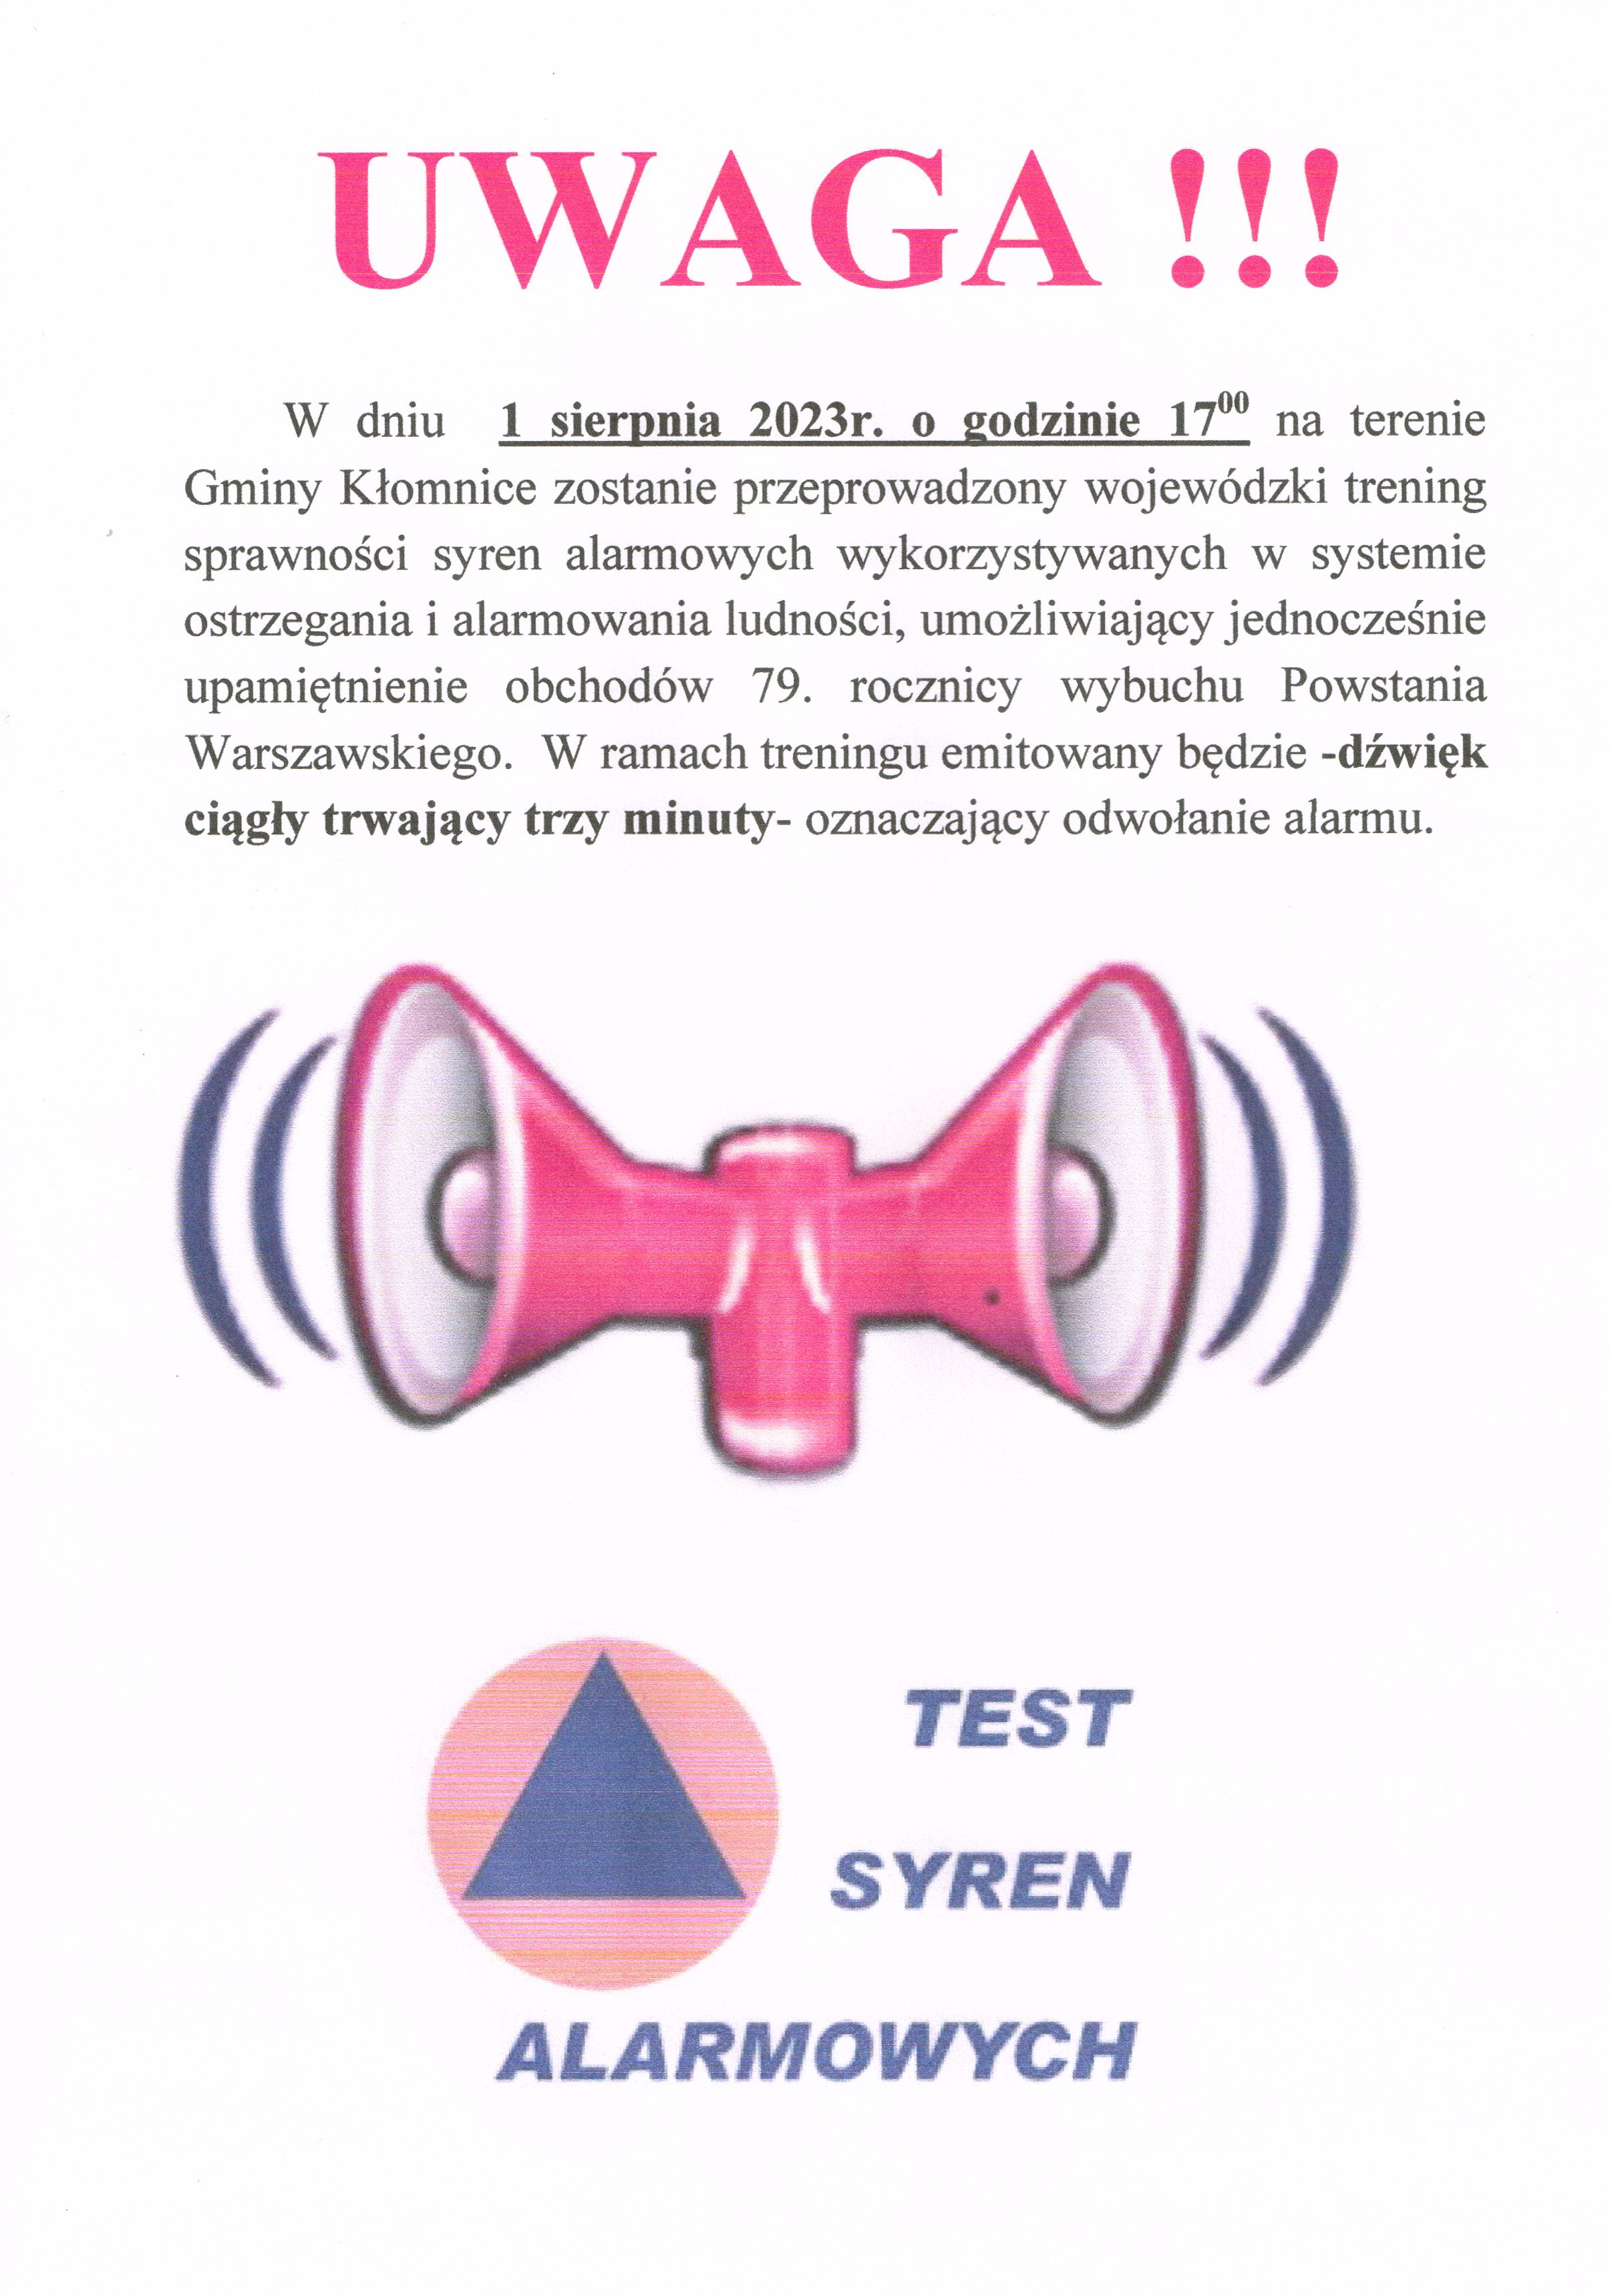 Test syren 1.08.2023 godz. 17:00